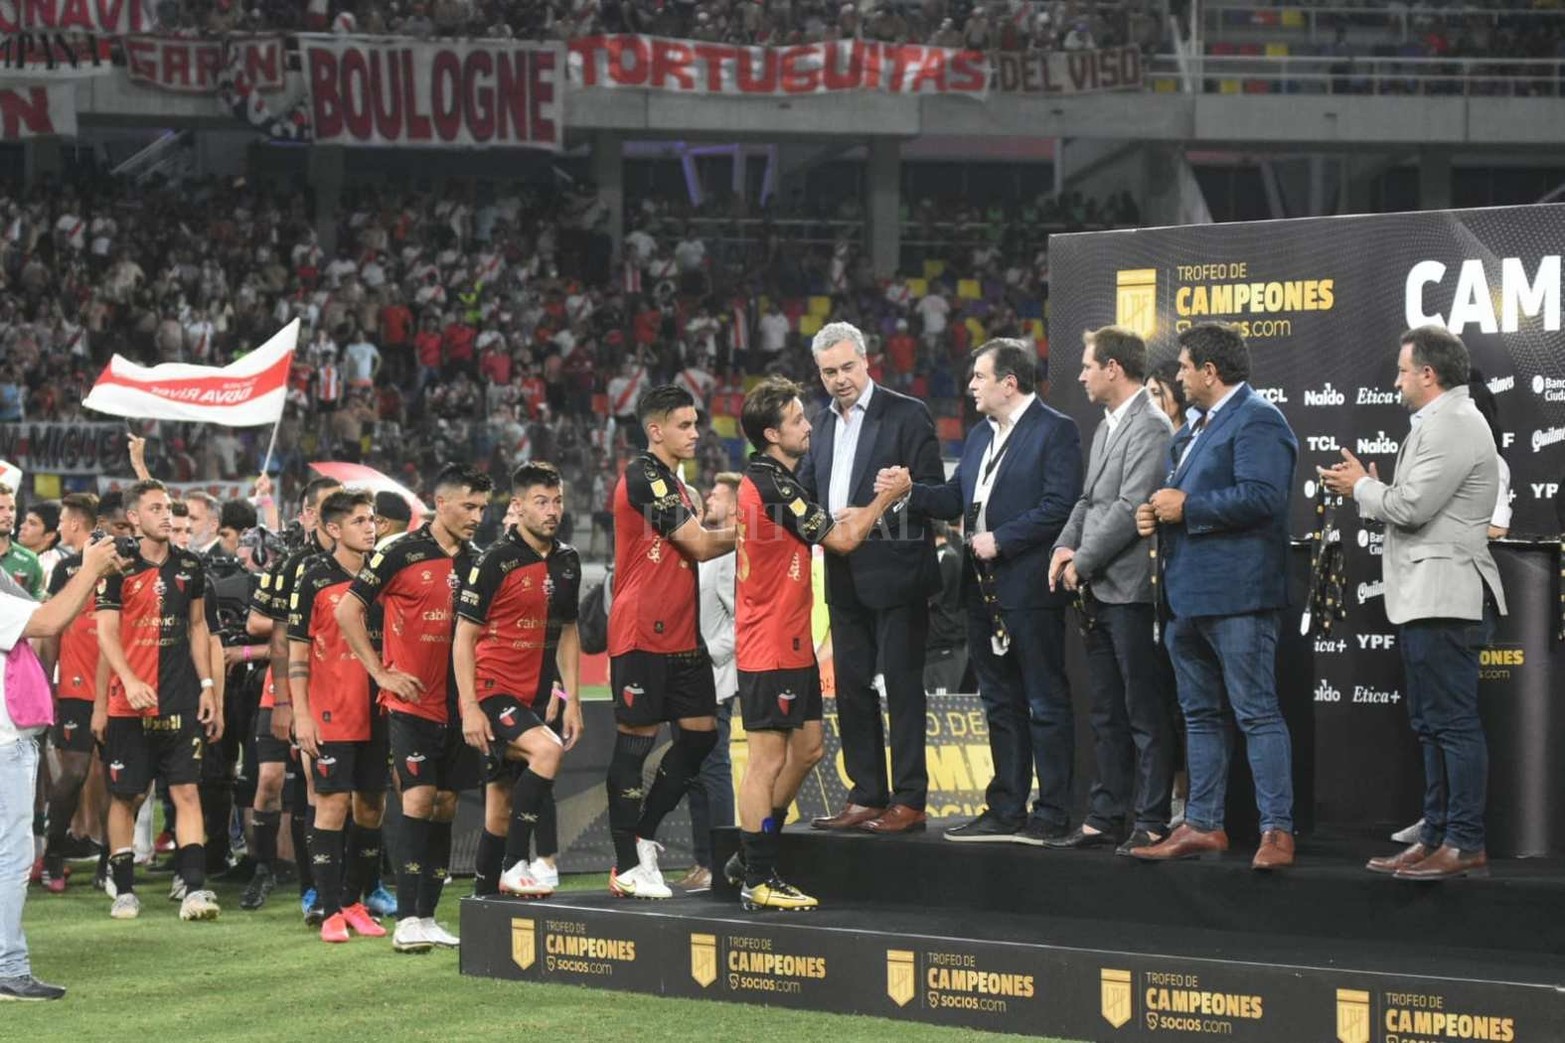 River derrotó 4 a 0 a Colón en la final del Trofeo de Campeones jugado en un único partido disputado en Santiago del Estero con hinchadas de los dos equipos.